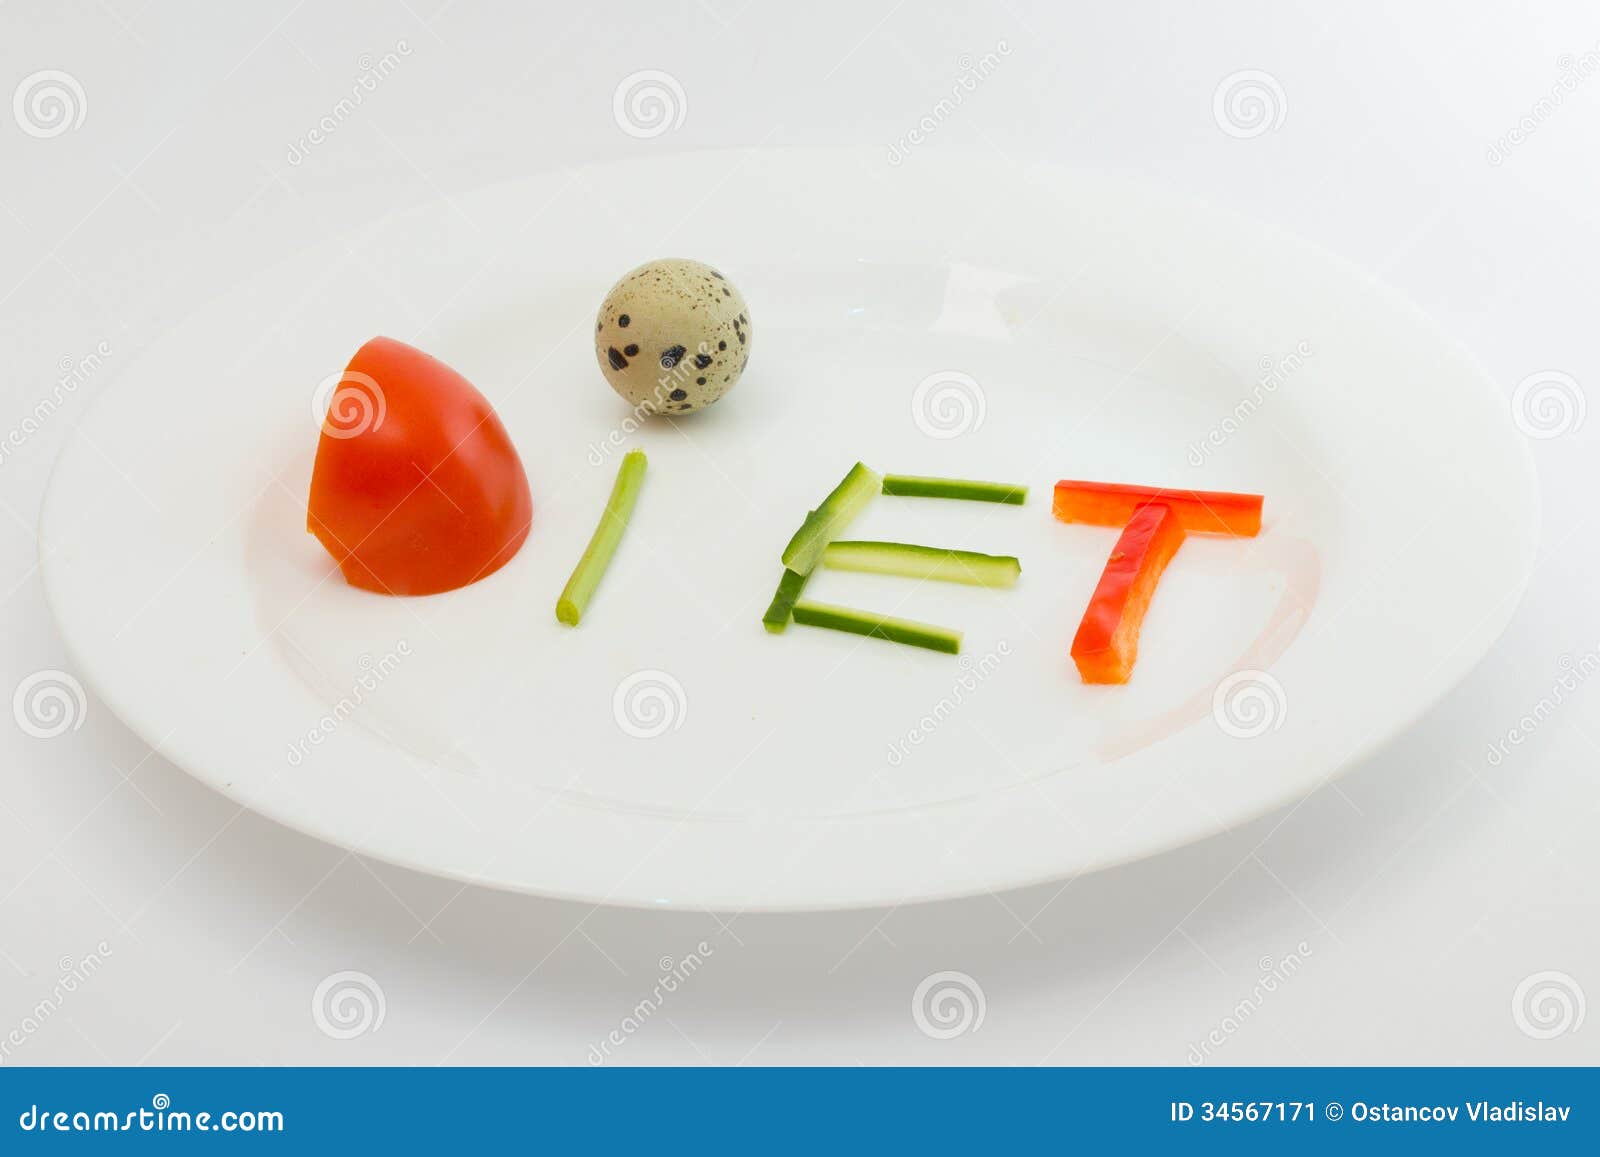 diet-plate-white-cucumber-tomato-pepper-quail-egg-34567171.jpg